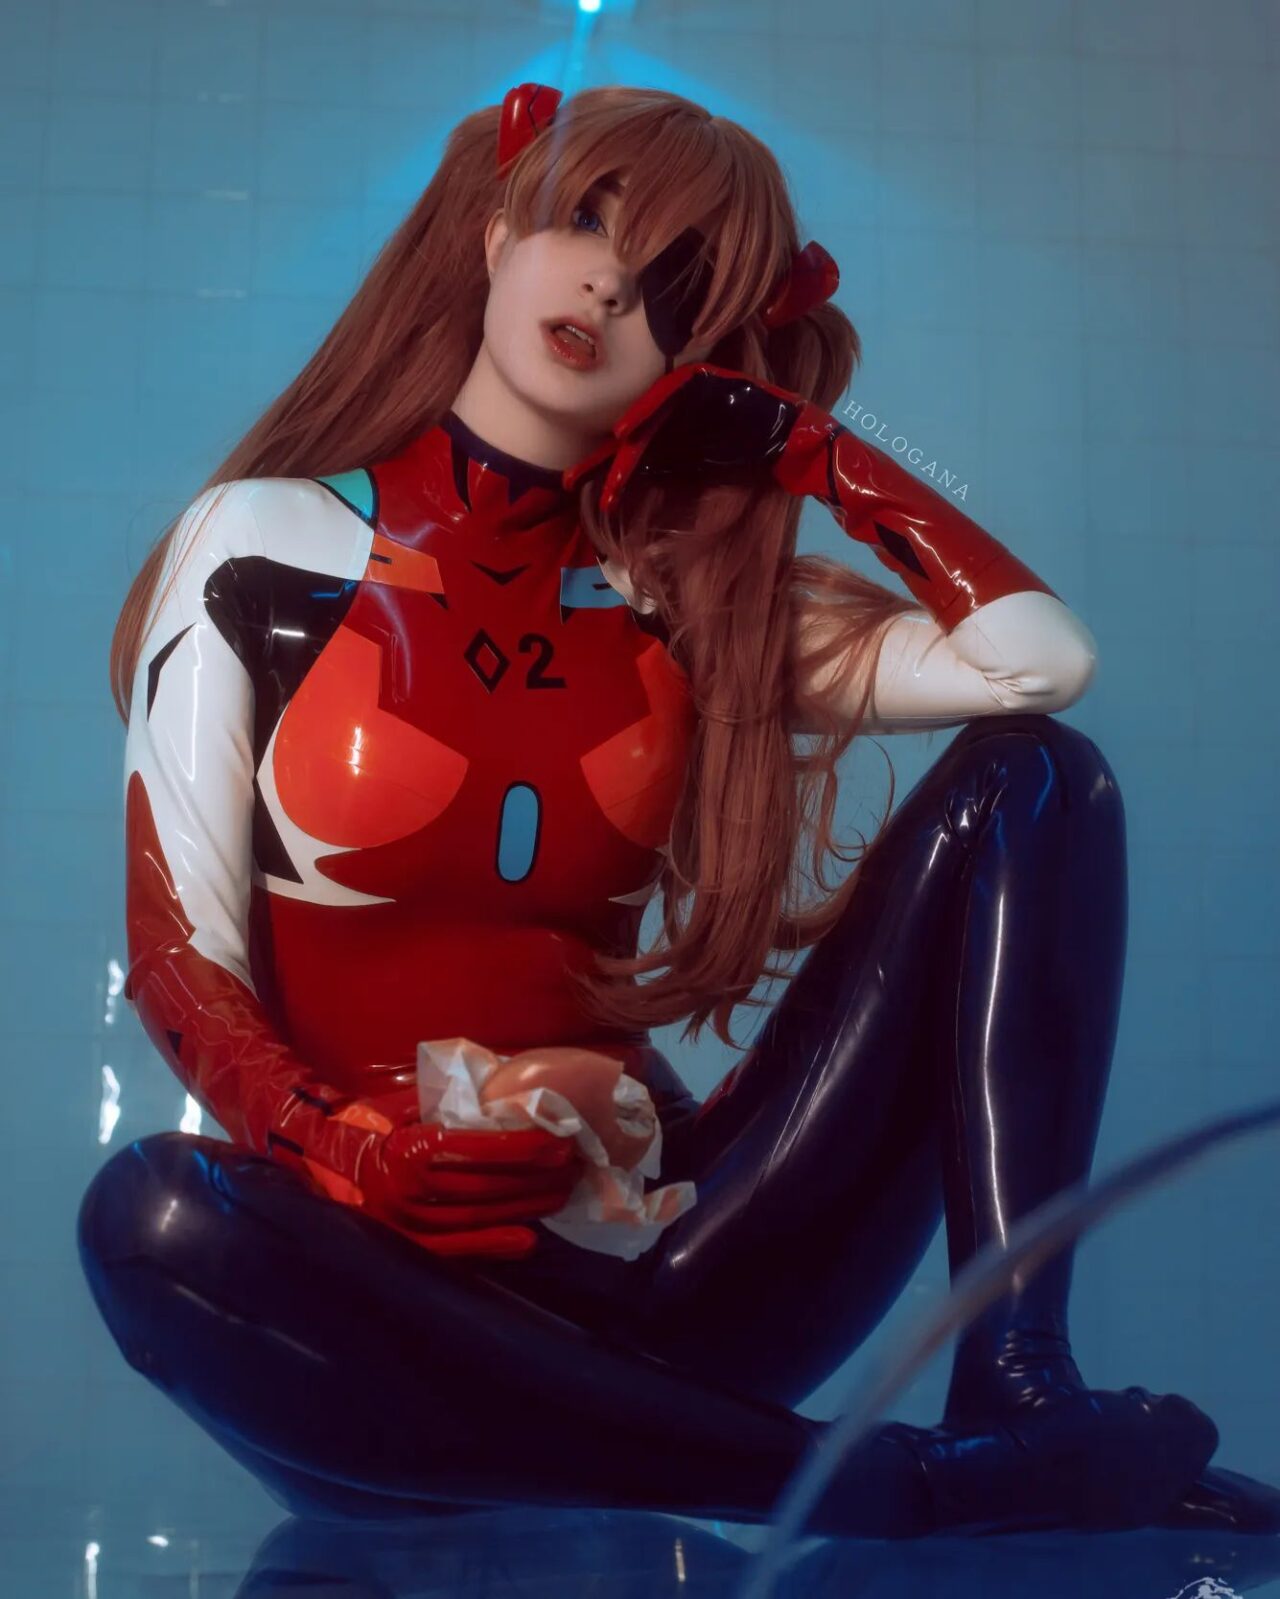 Modelo Hologana fez um avassalador cosplay da Asuka de Neon Genesis Evangelion